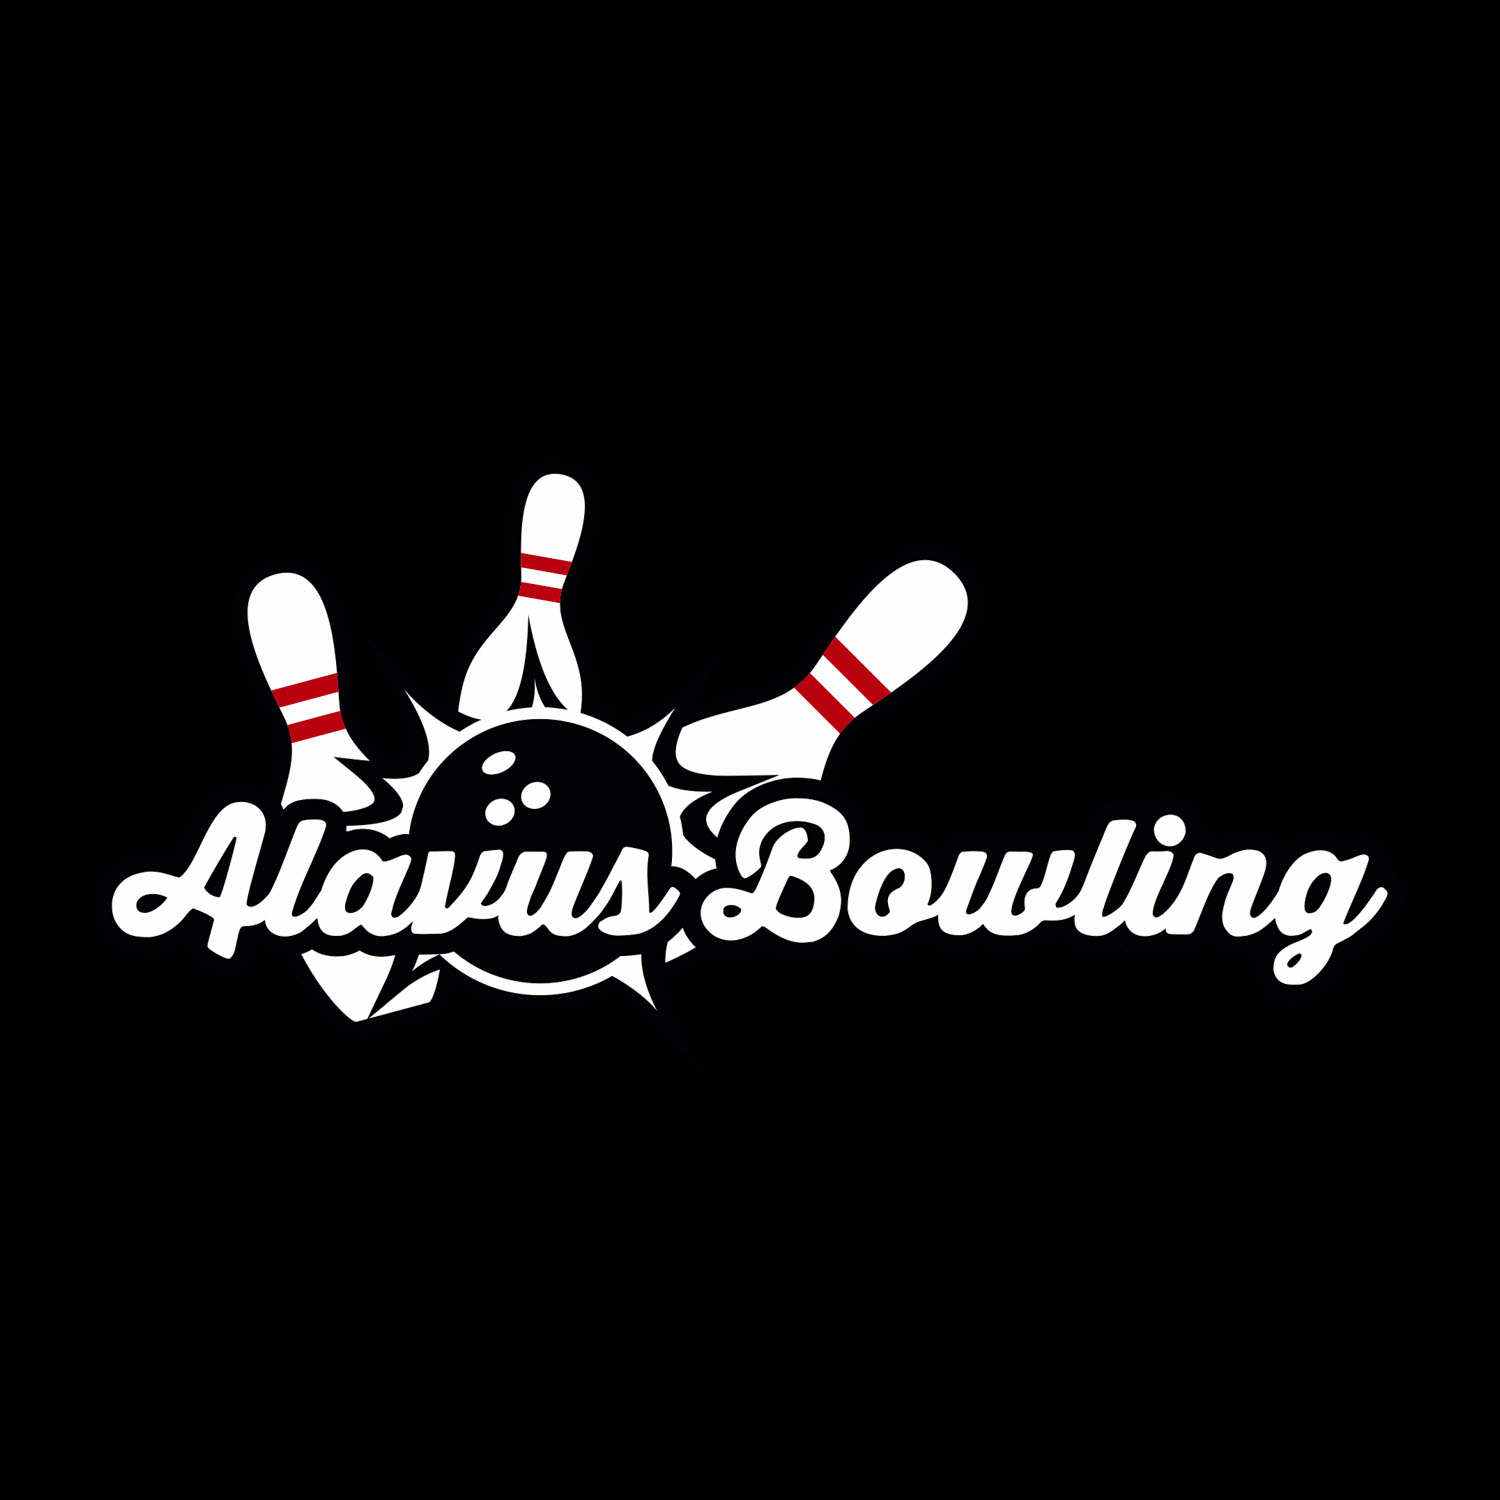 Alavus Bowling logo, Therwiz Design, Mika Tervaskangas logonsuunnittelu, yritysilme, liikemerkki Pietarsaari, Pohjanmaa, Suomi